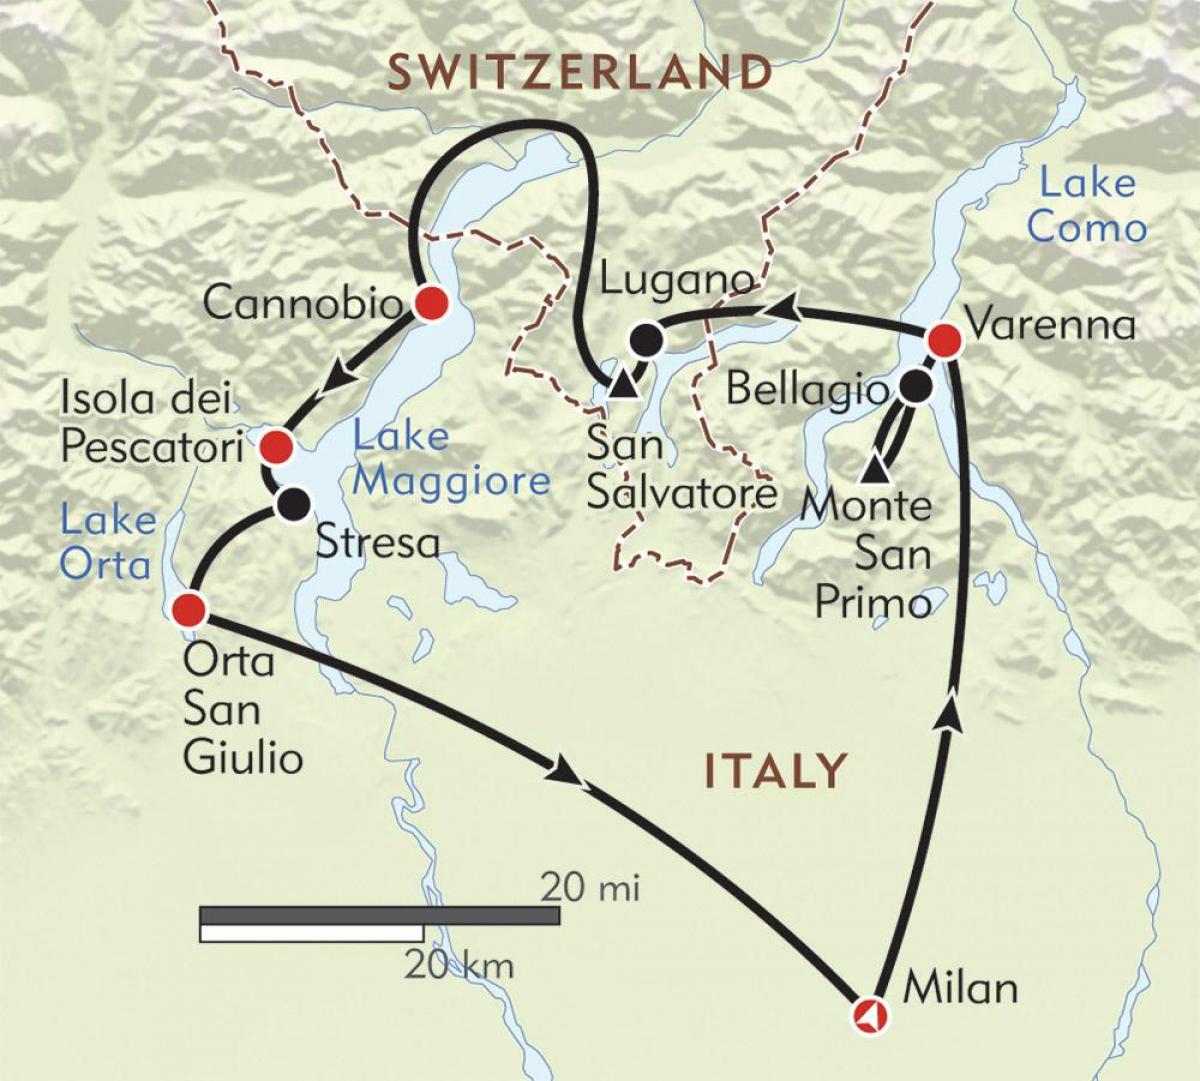 kort over milano søer